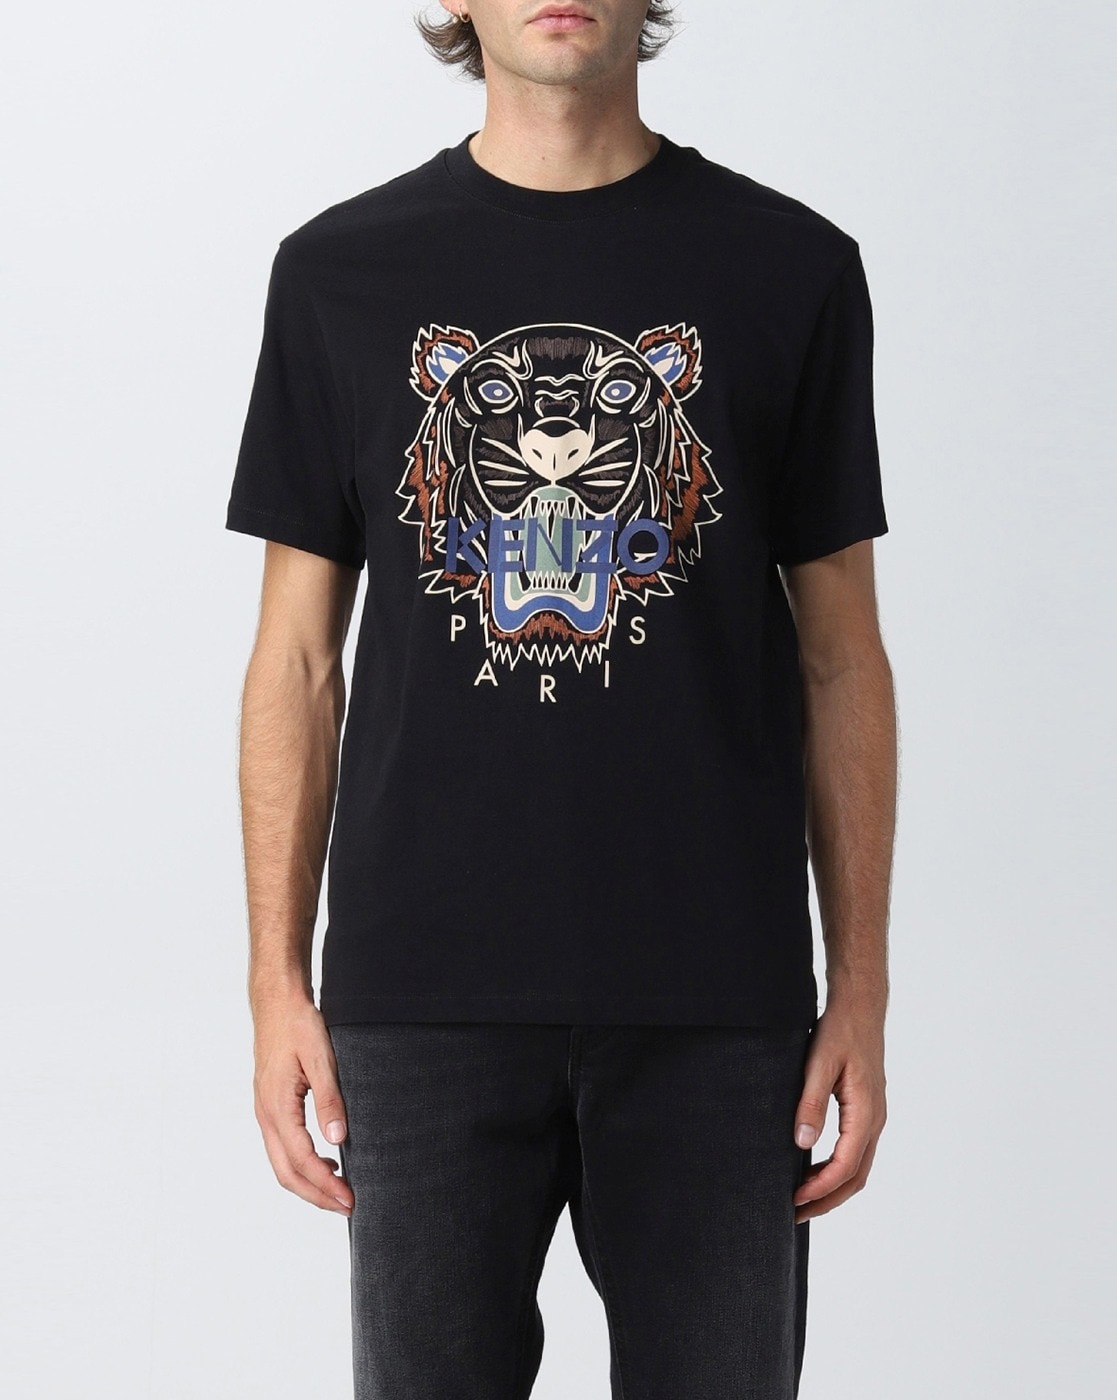 Printify Kent Tekulve Legend T-Shirt - Back-Printed Graphic Tee